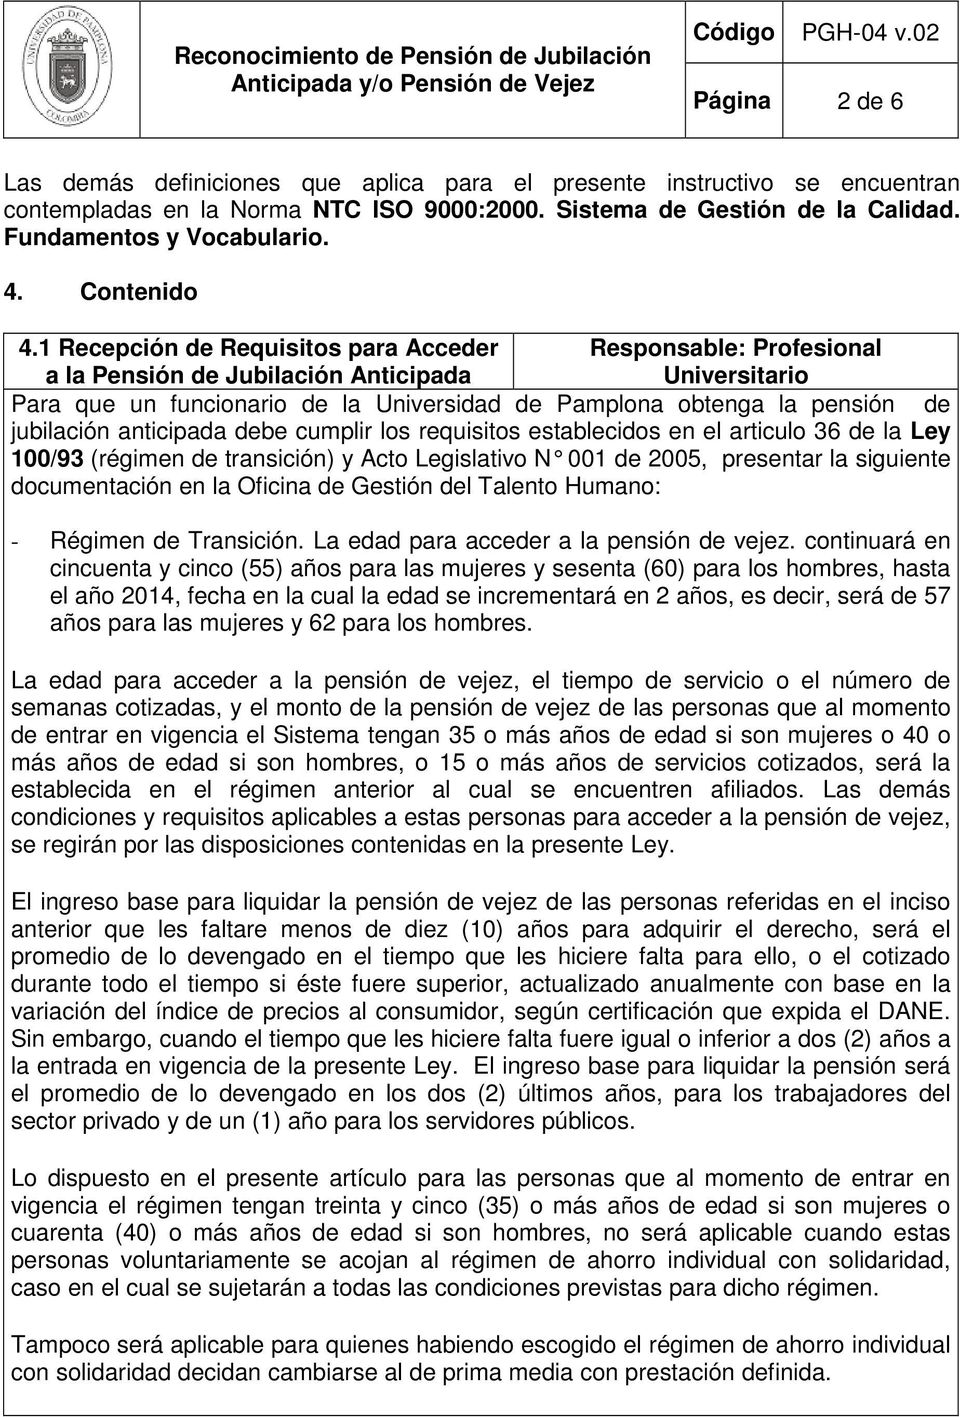 1 Recepción de Requisitos para Acceder Responsable: Profesional a la Pensión de Jubilación Anticipada Universitario Para que un funcionario de la Universidad de Pamplona obtenga la pensión de